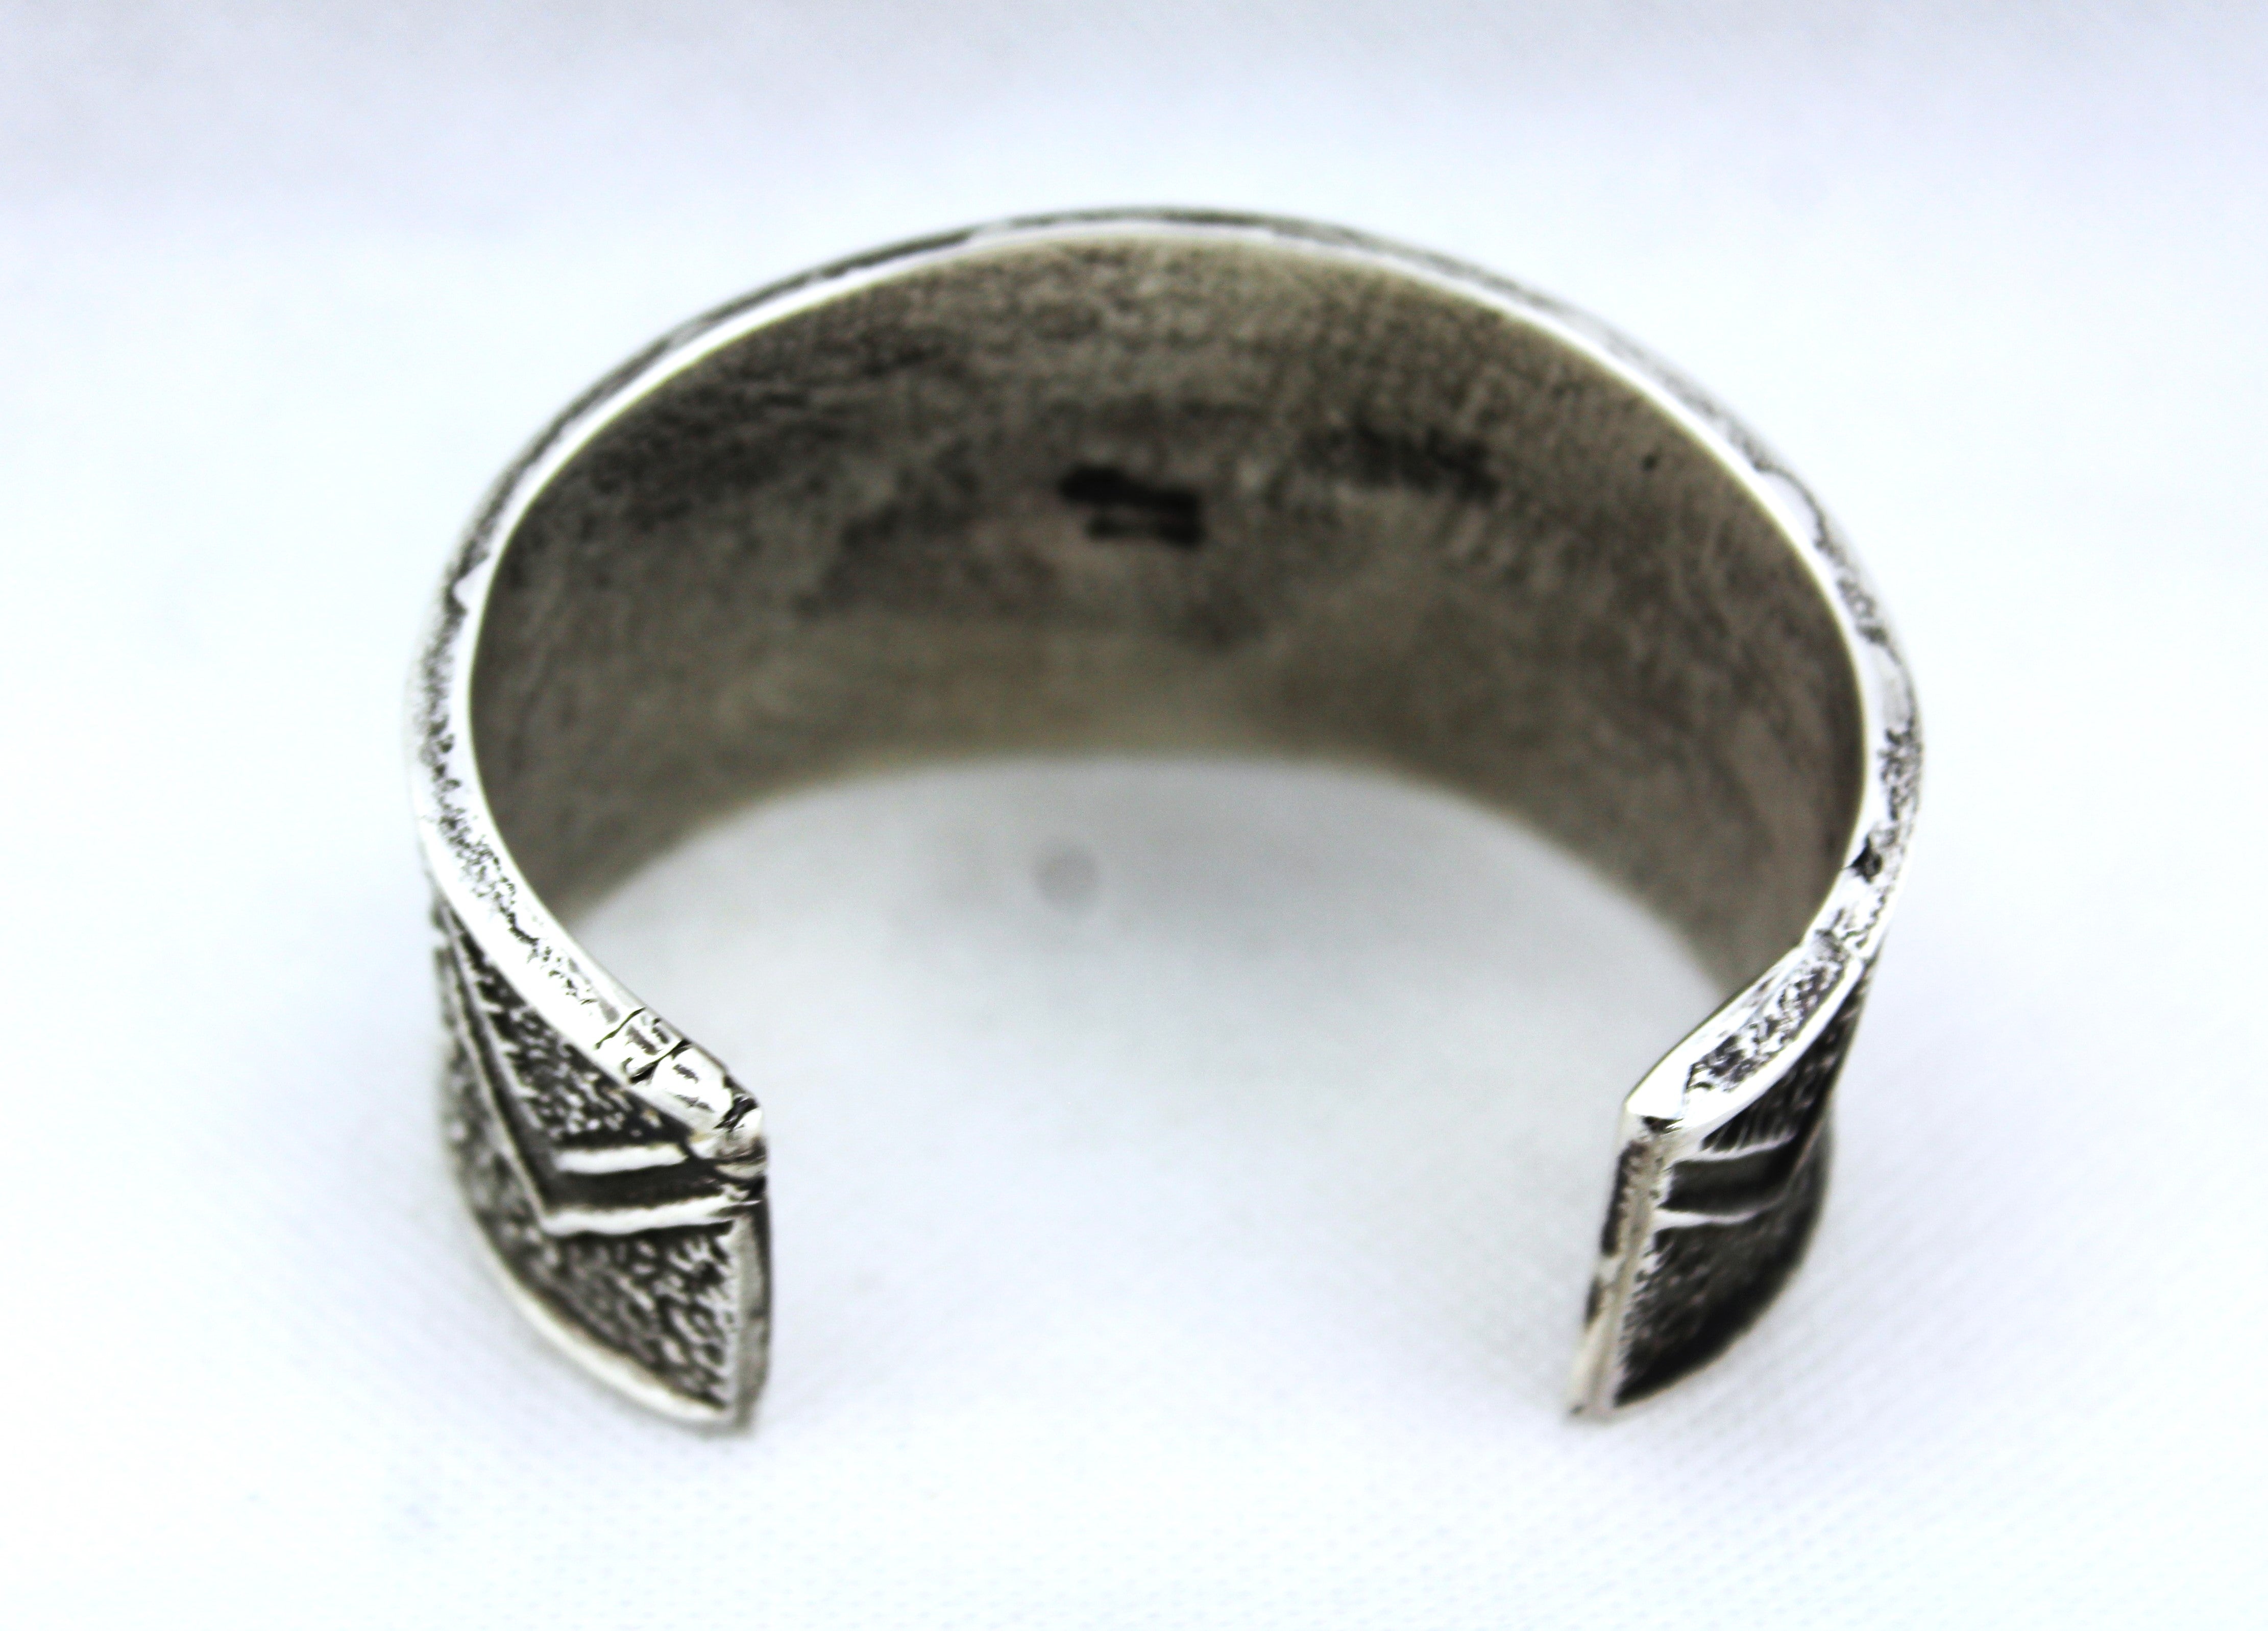 Tufa Cast Sterling Silver Bracelet